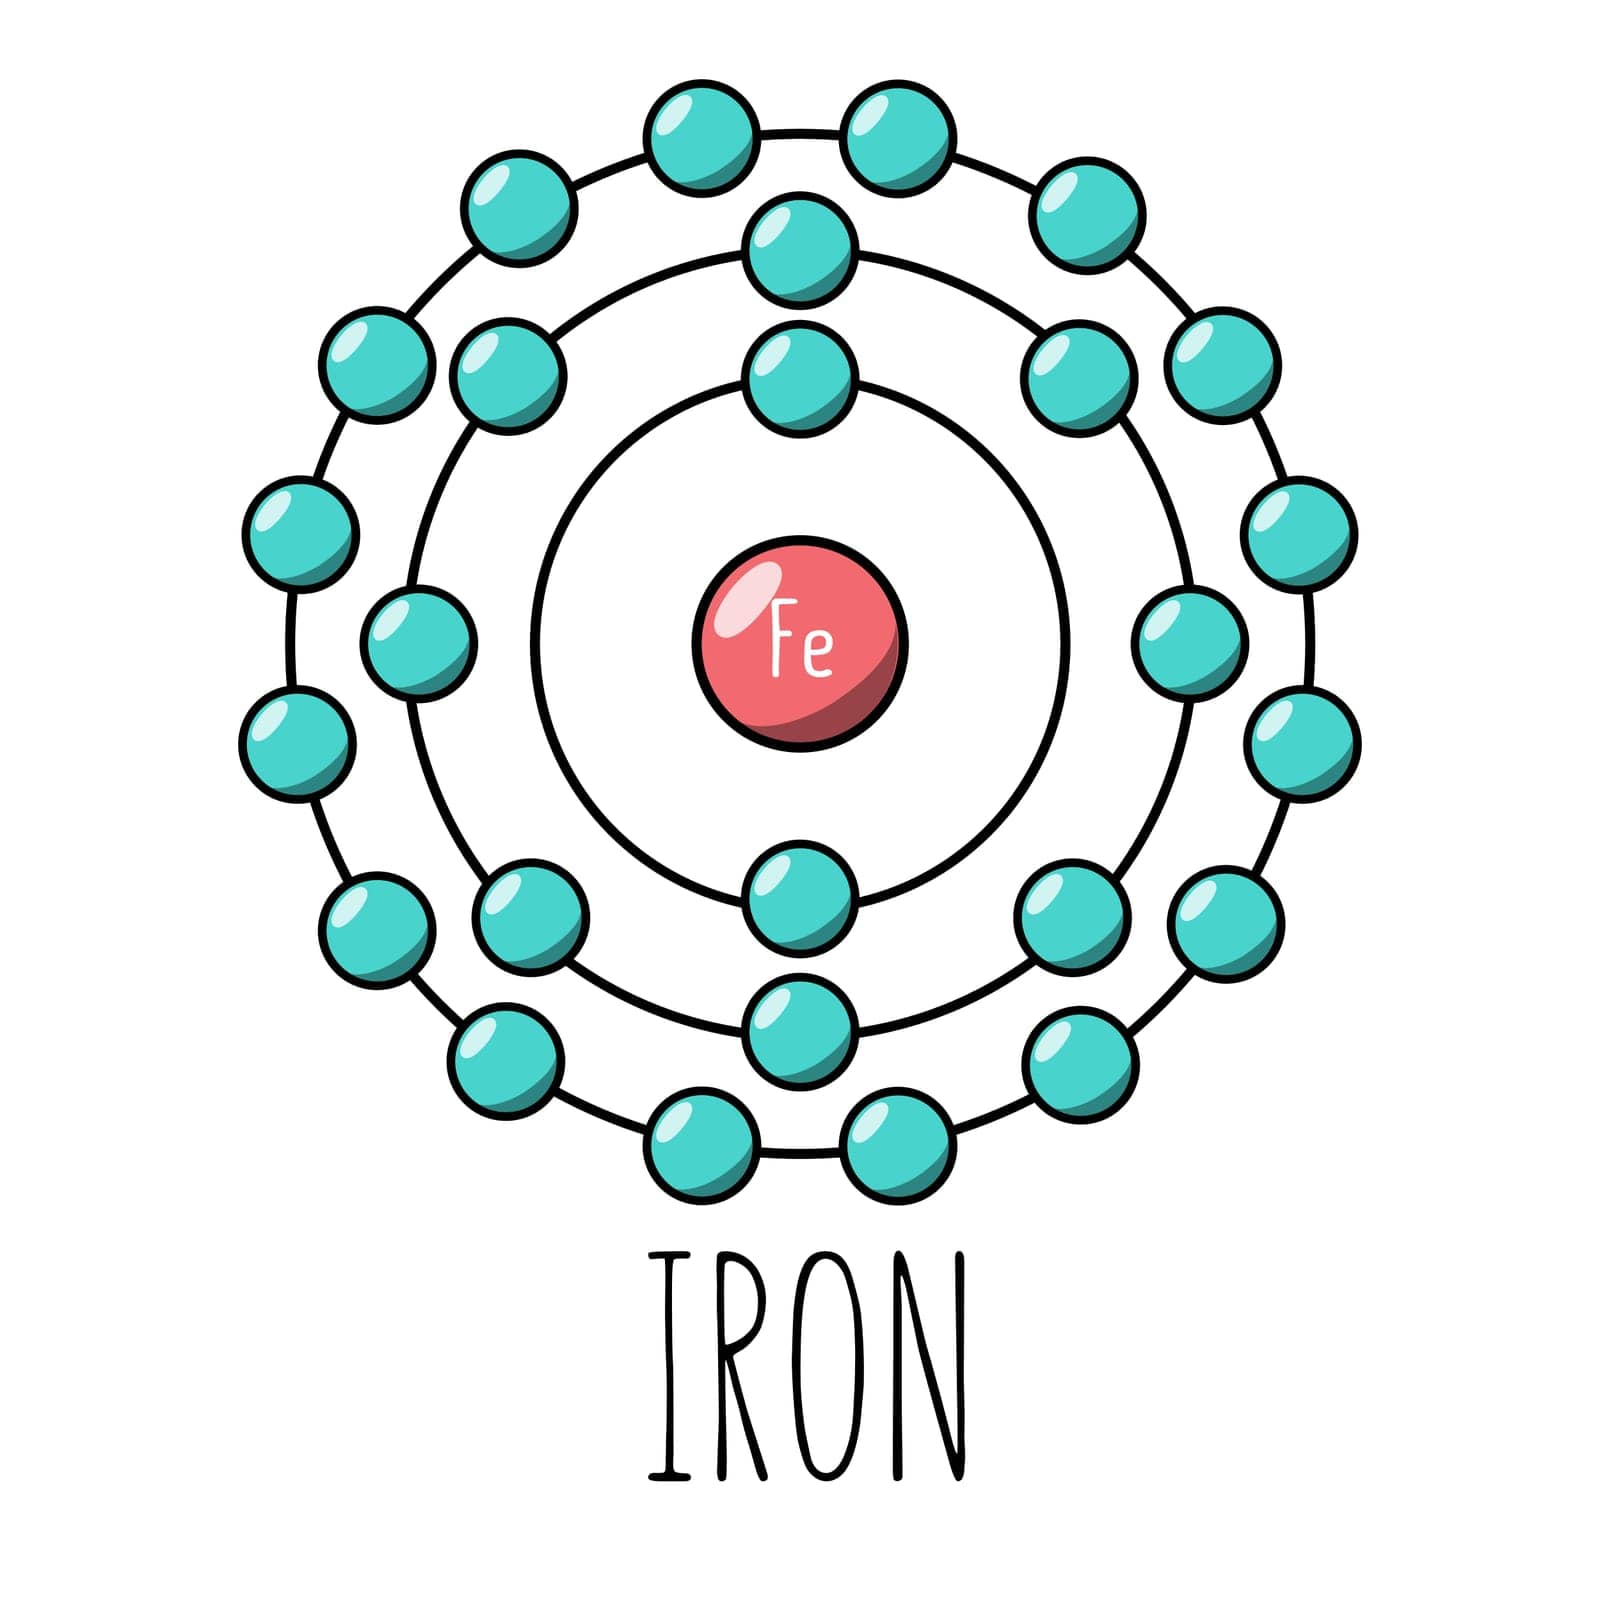 Iron atom Bohr model. Cartoon style. Vector editable